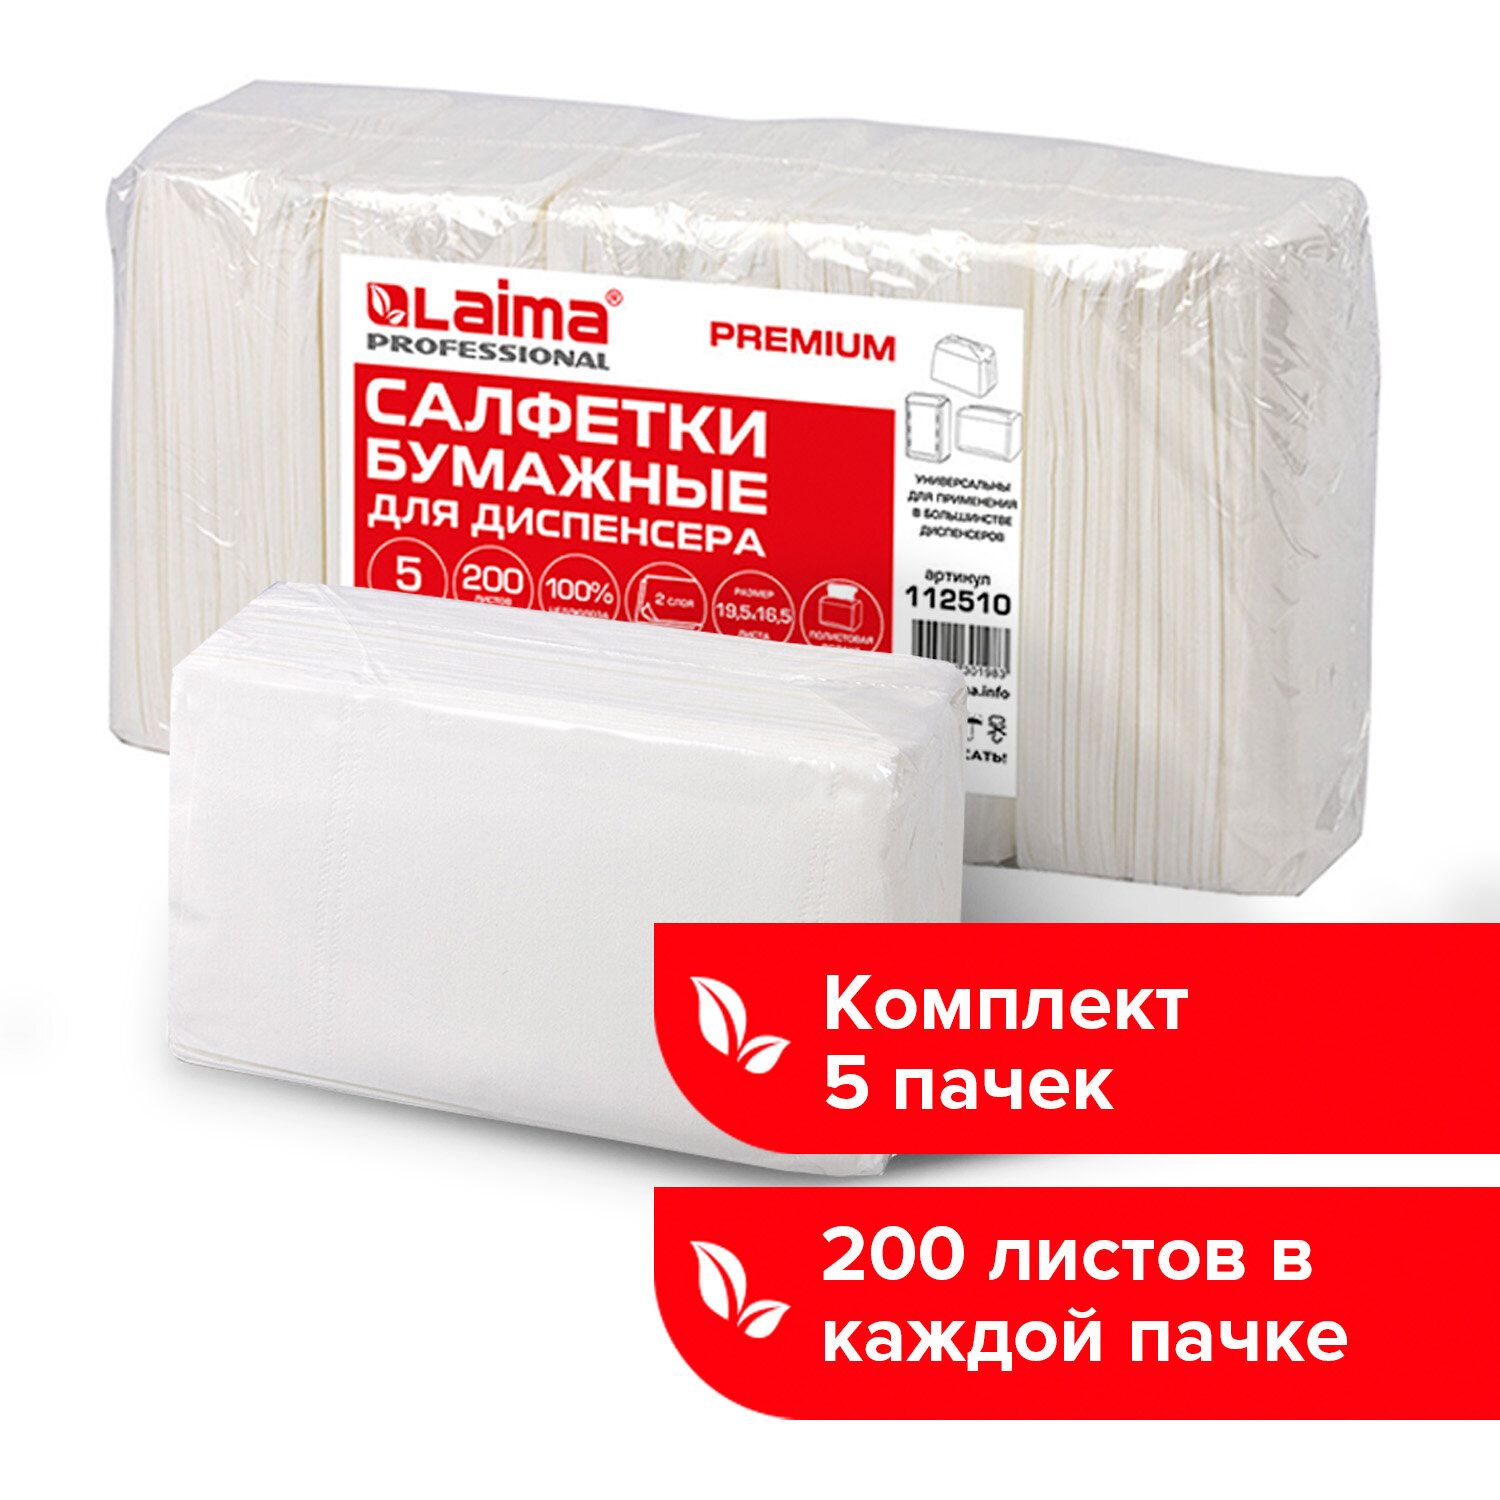 Салфеткибумажныедлядиспенсера,Laima(СистемаN4)Premium,2-слойные,200штук,19,5х16,5см,белые